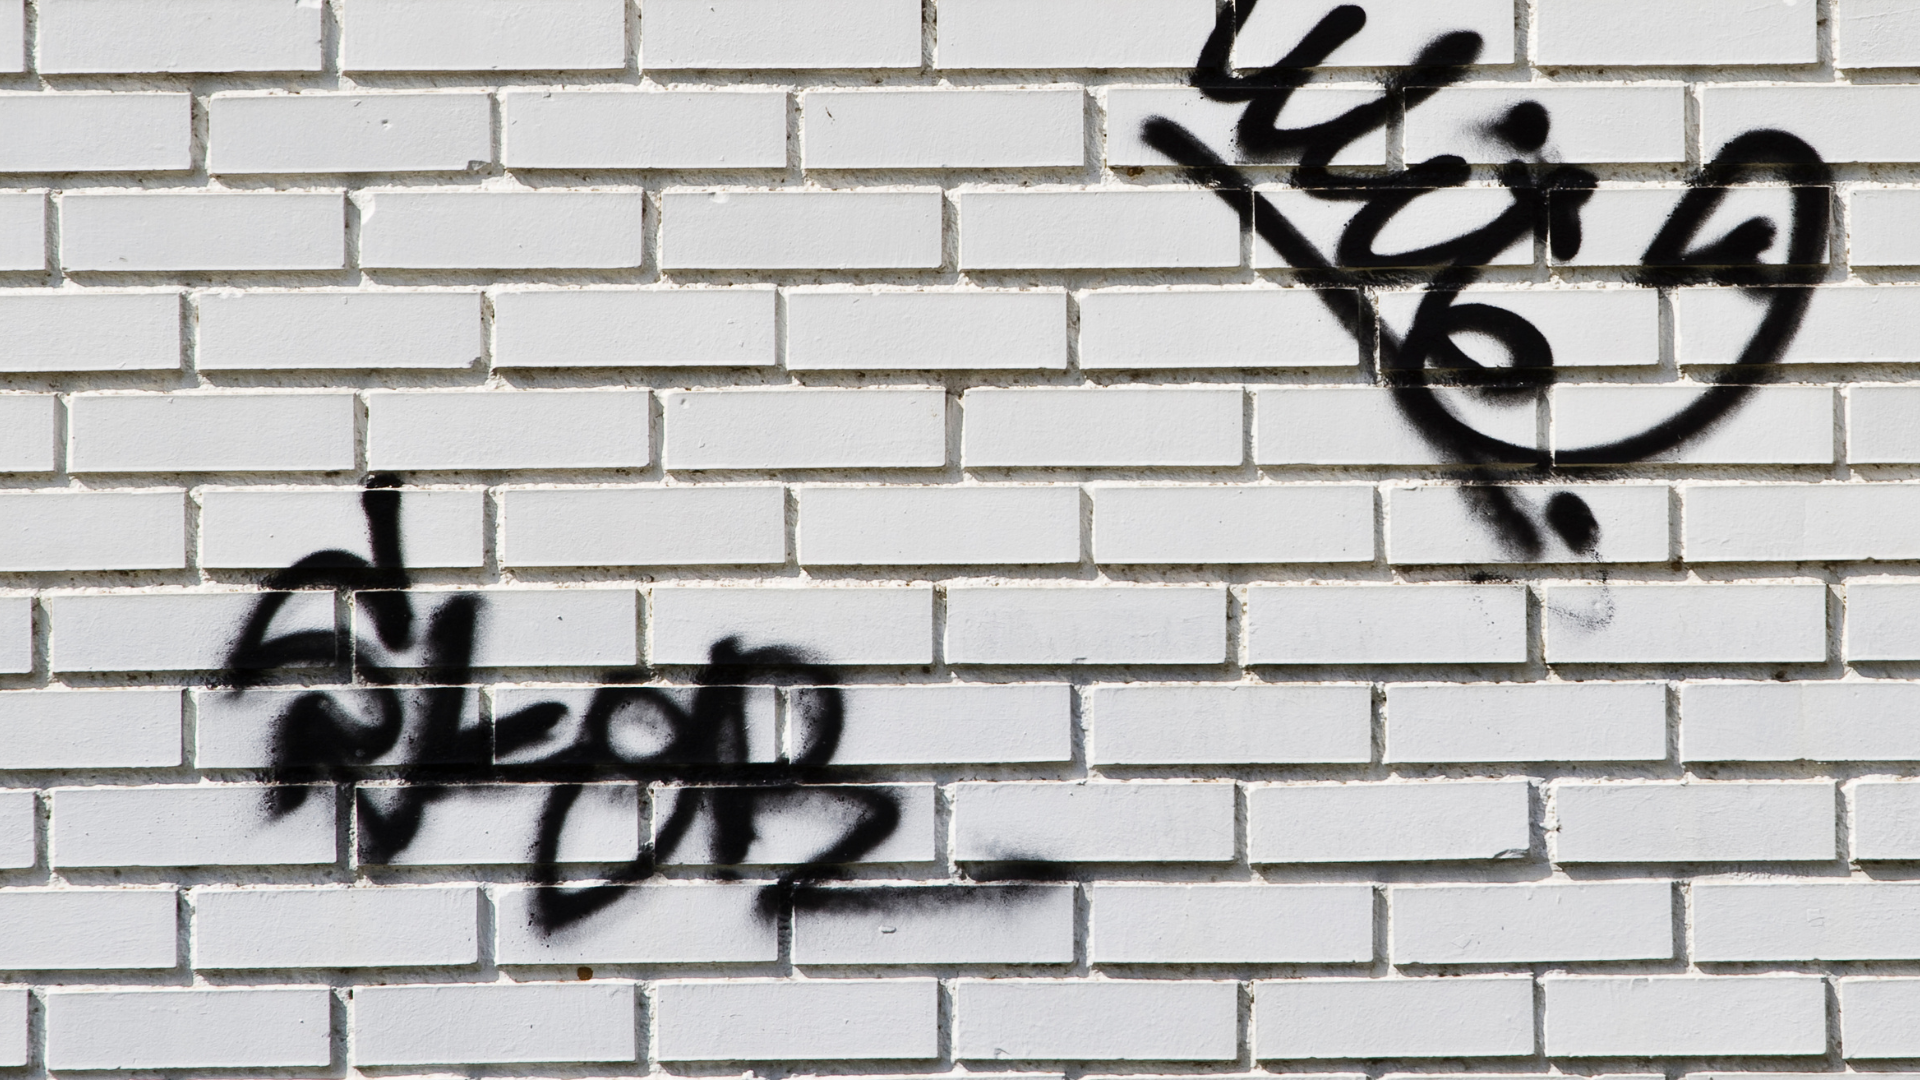 Graffiti tags on a white brick wall